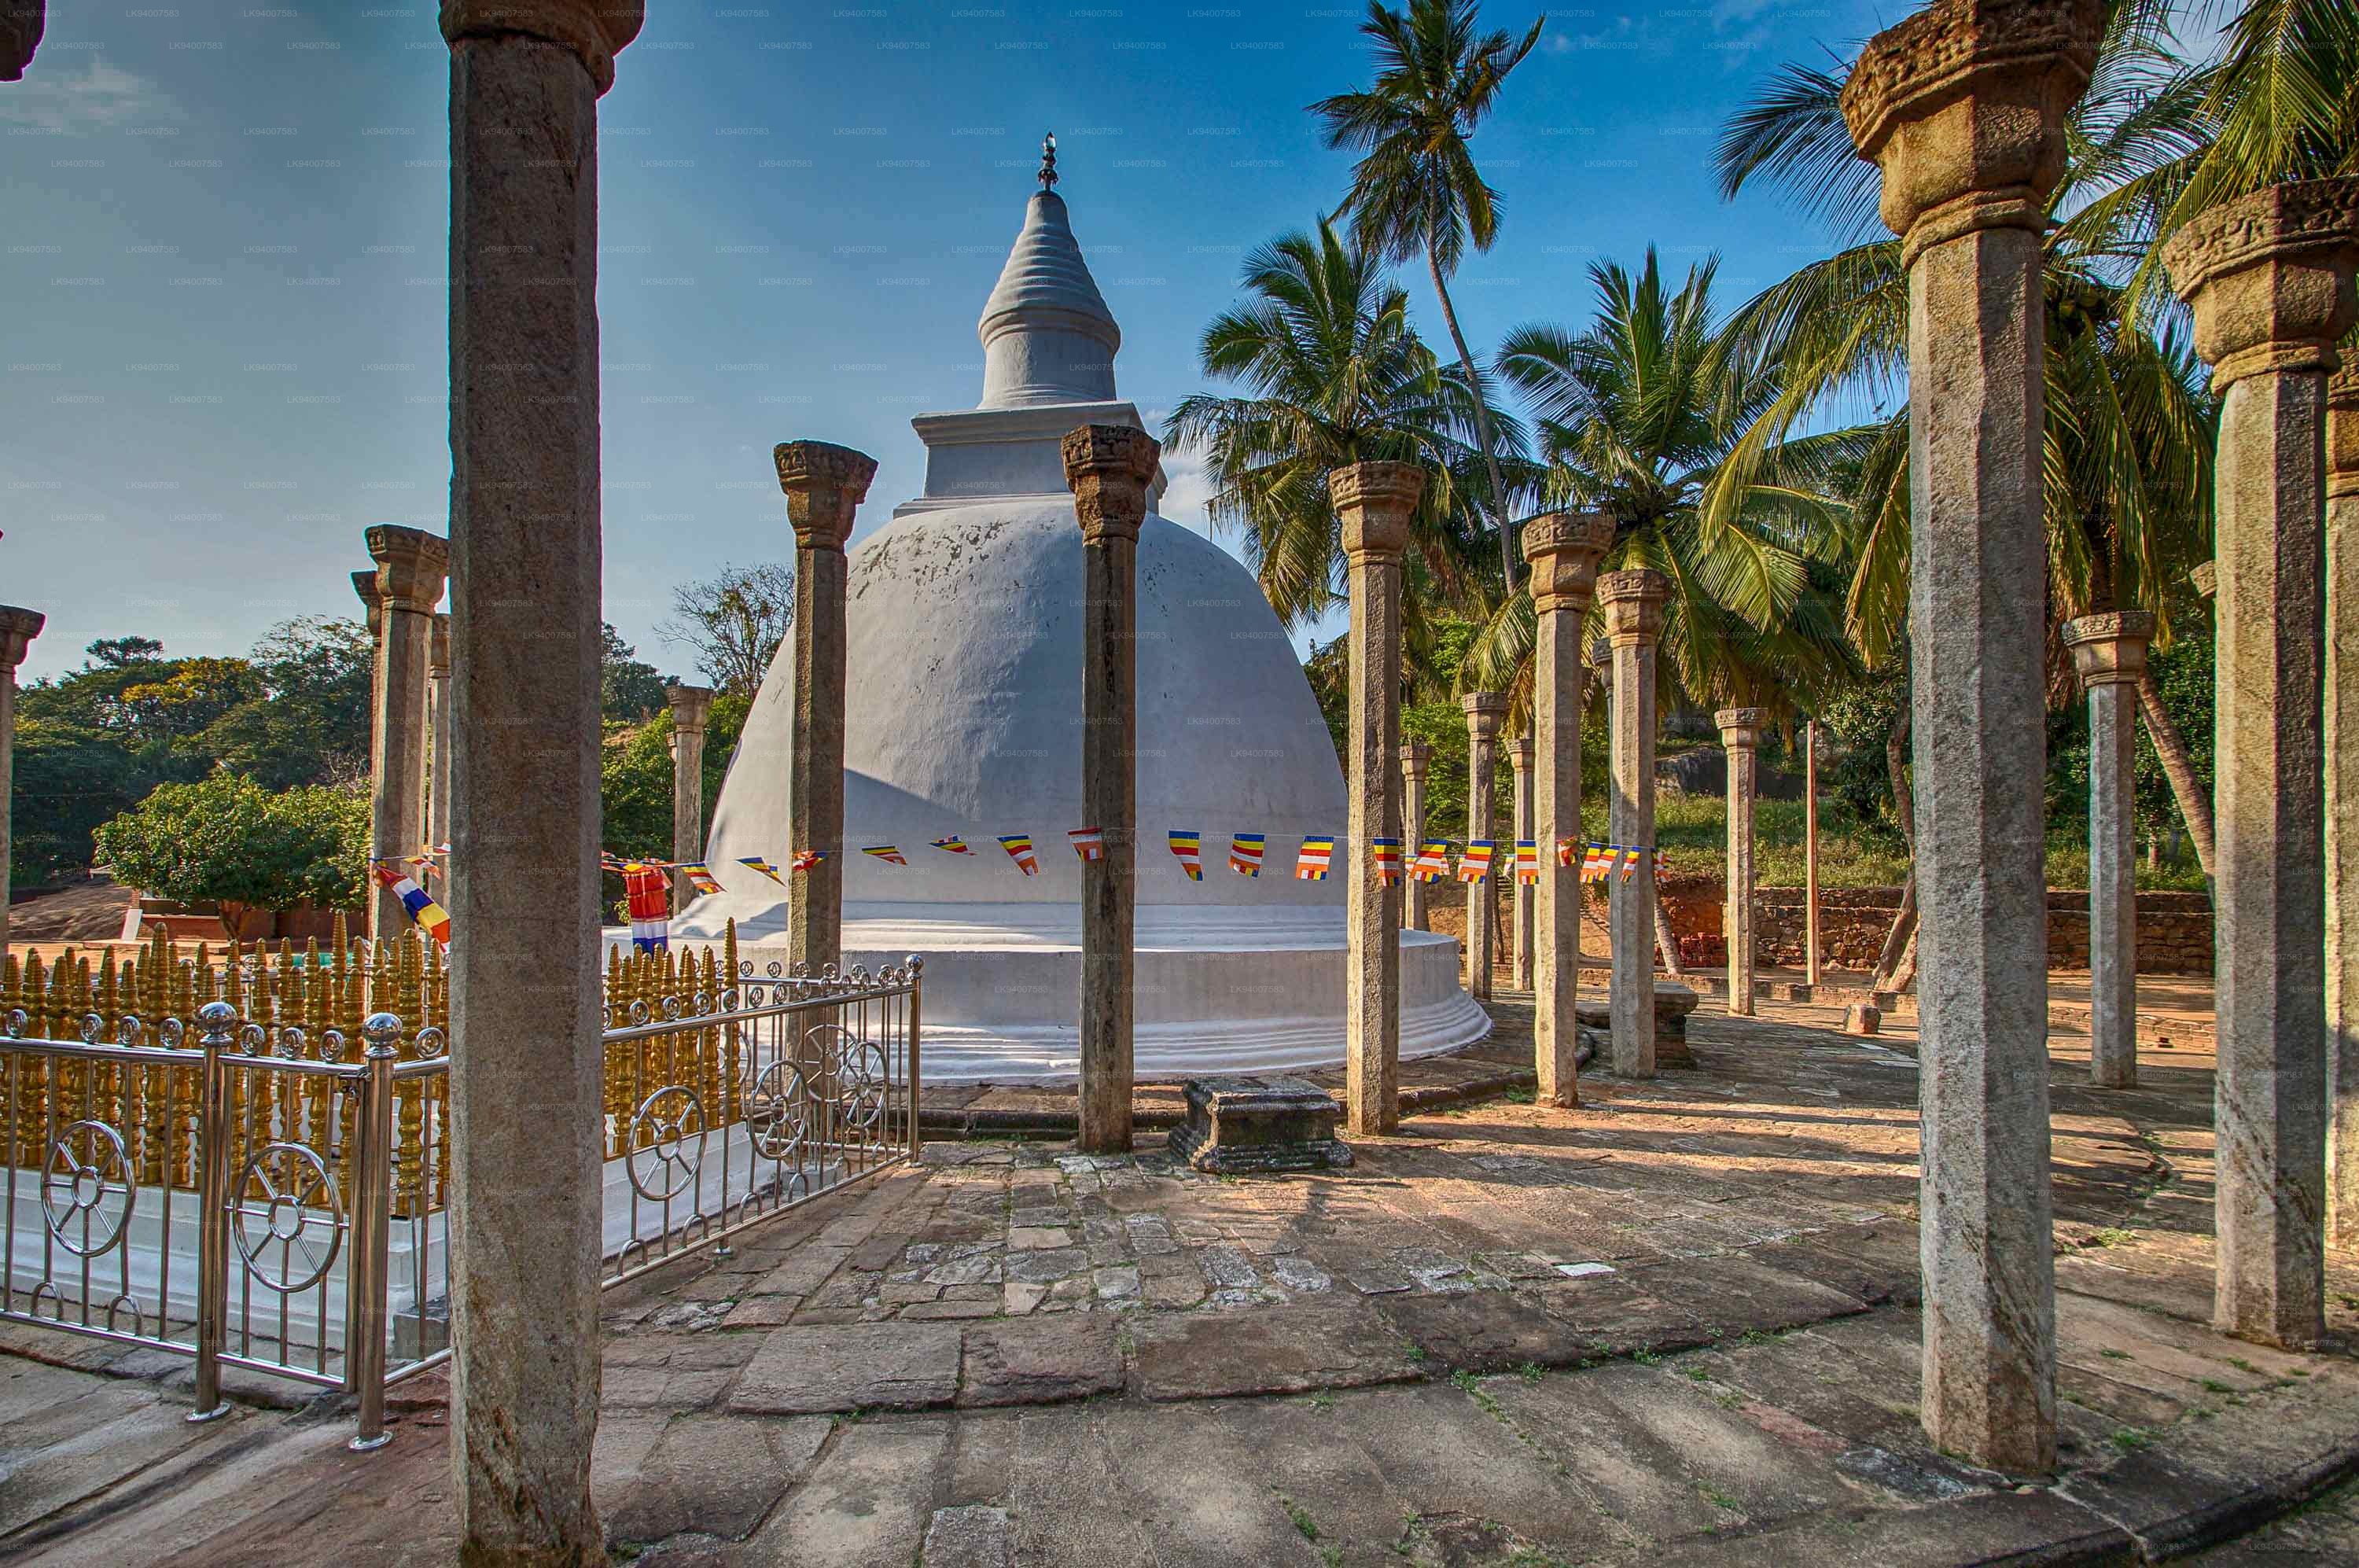 Ambasthala Stupa